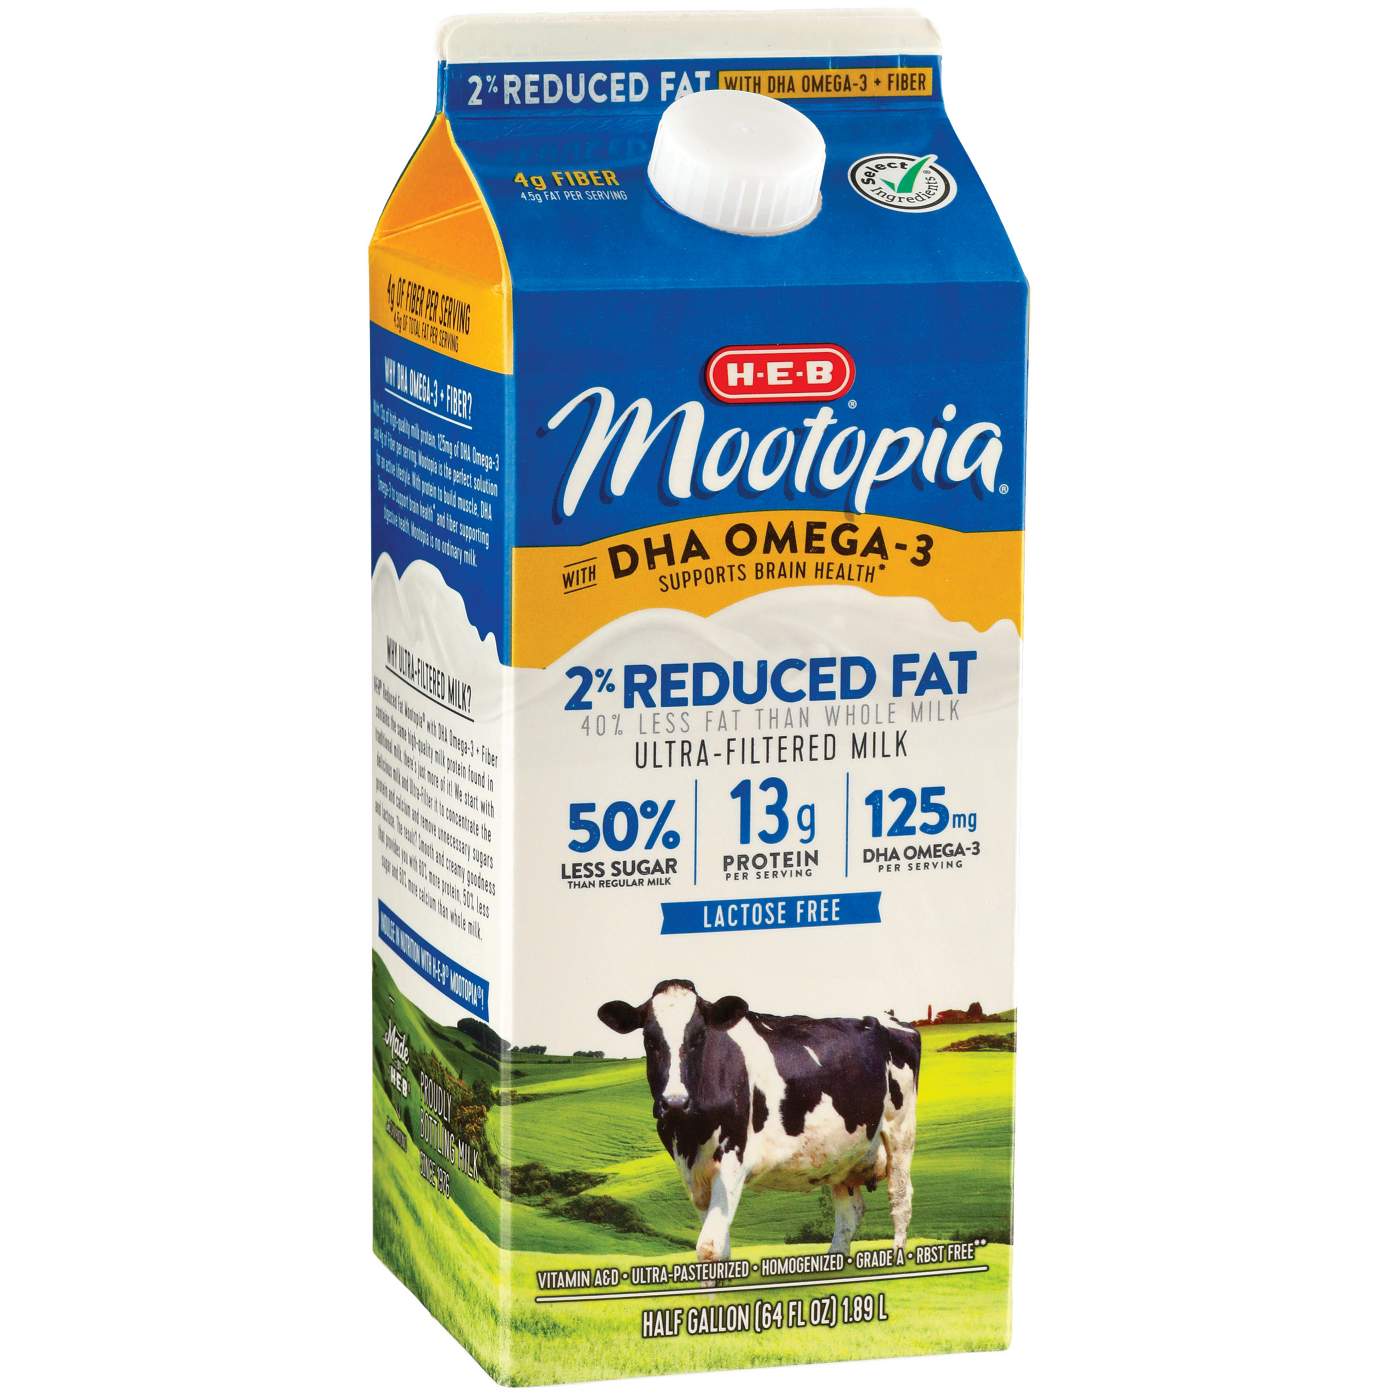 H-E-B Mootopia Lactose-Free DHA Omega-3 2% Reduced Fat Milk; image 1 of 2